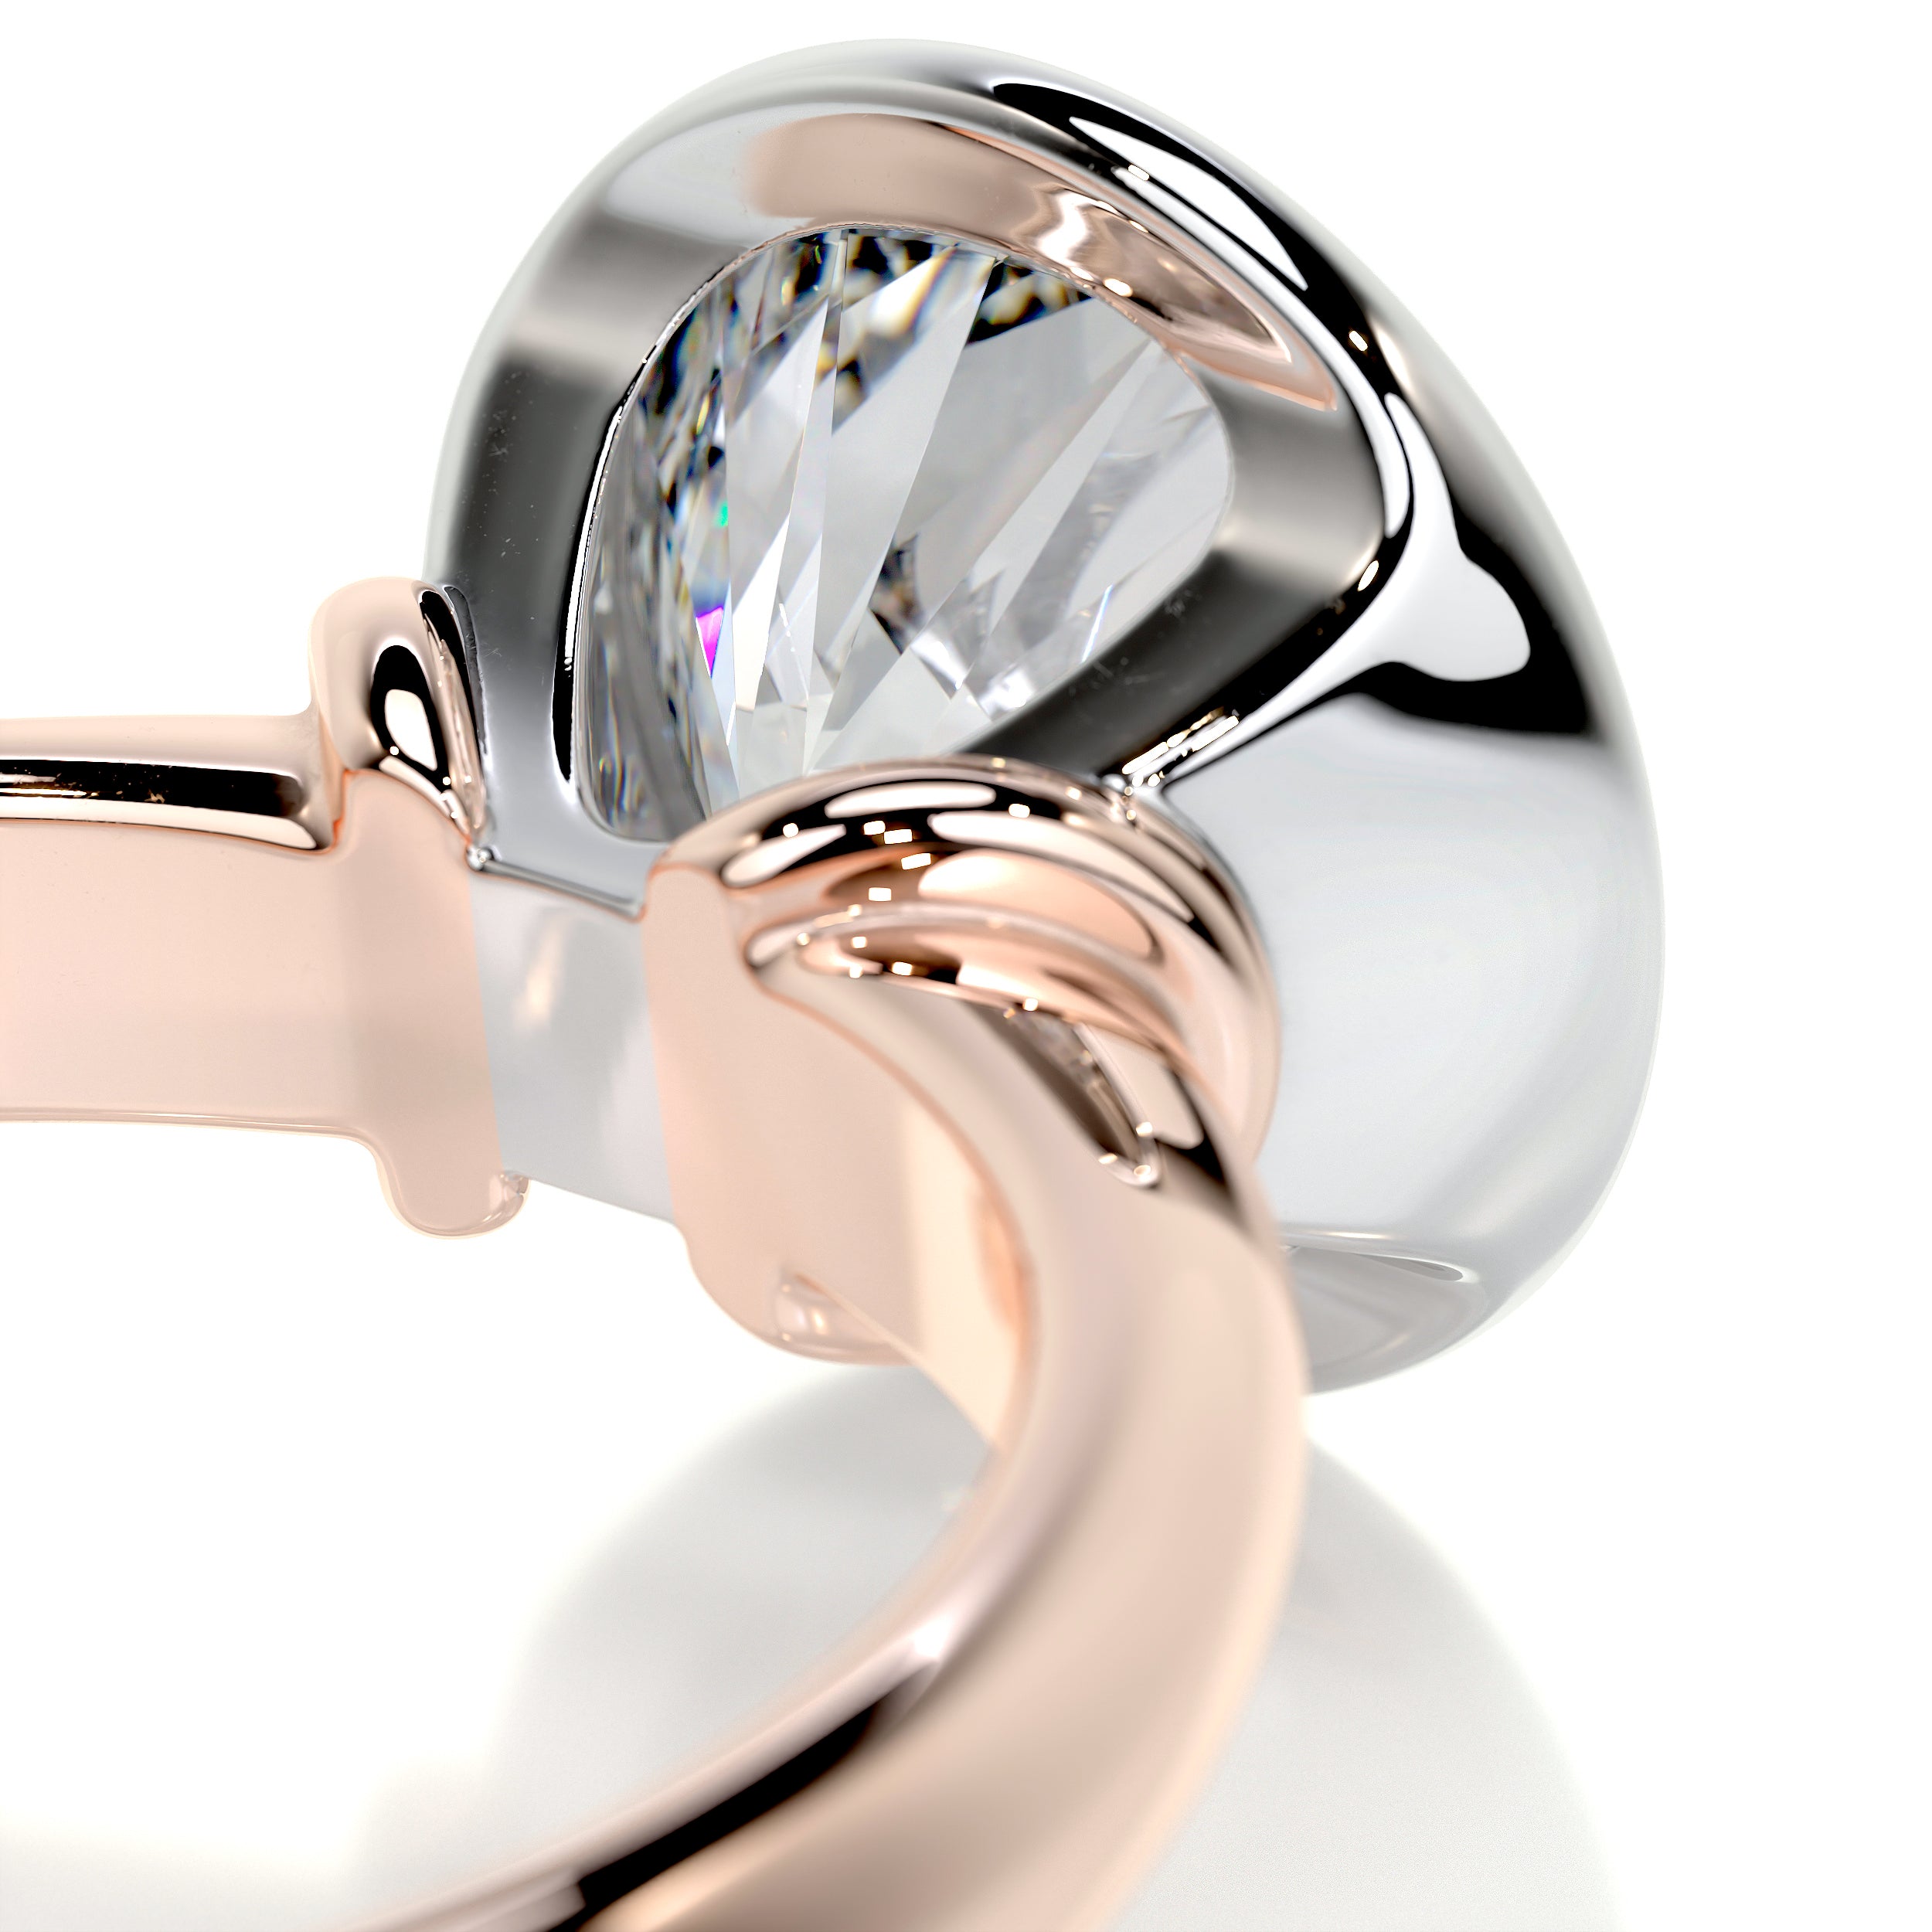 Kaylee Diamond Engagement Ring   (3 Carat) -14K Rose Gold